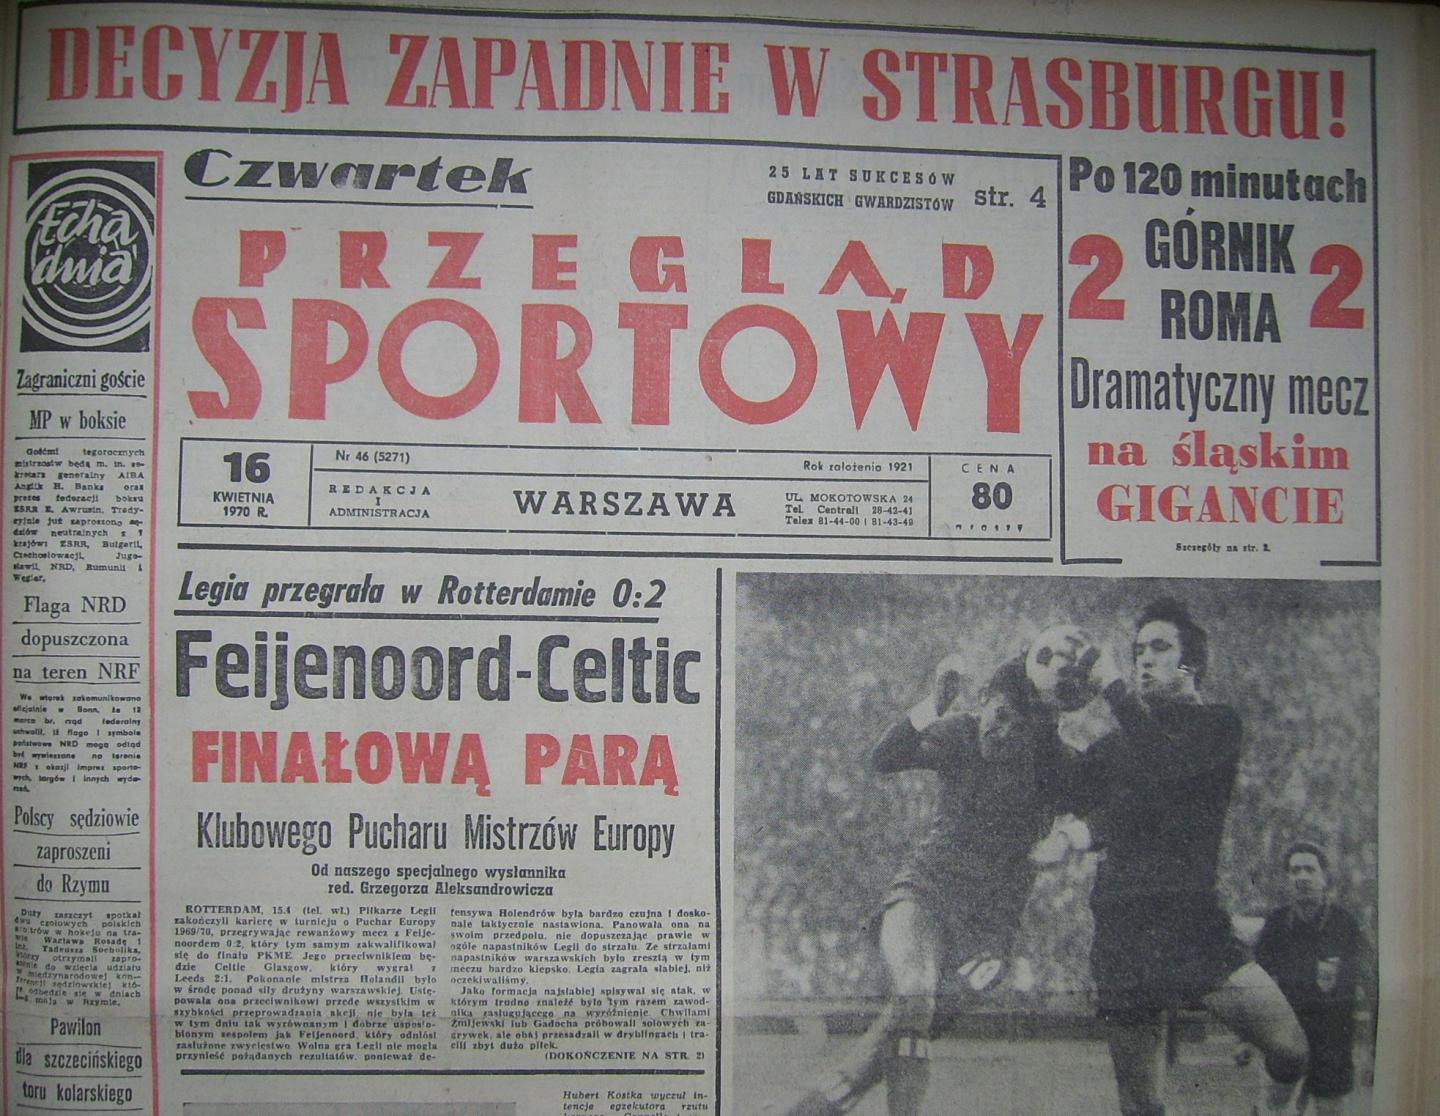 Przeglad Sportowy po meczu Górnik - Roma (15.04.1970)